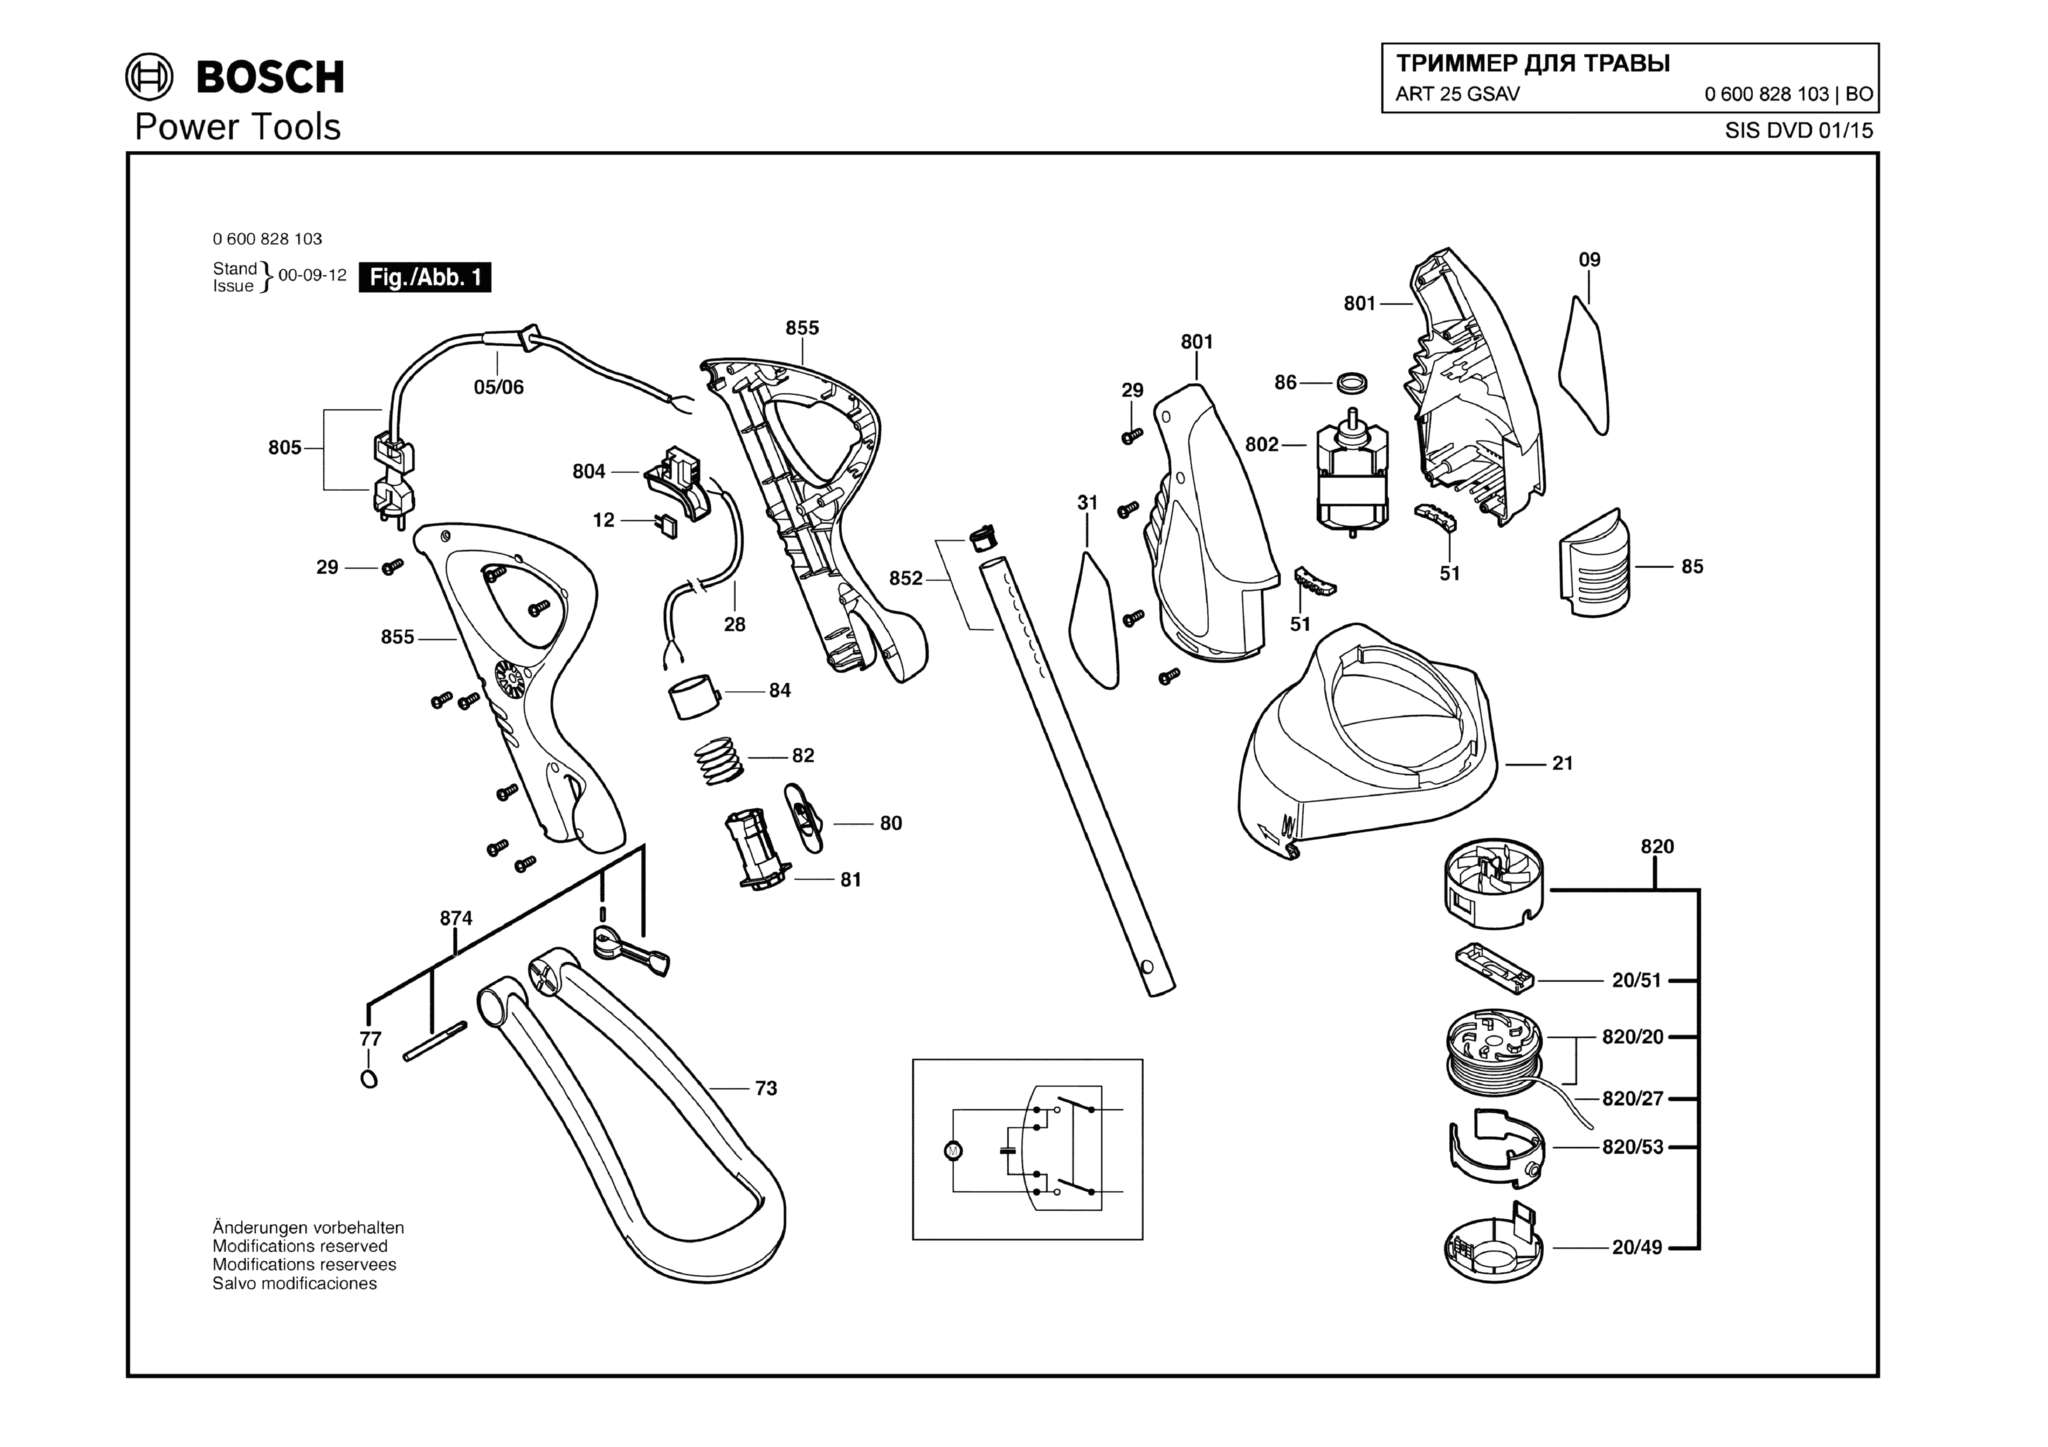 Запчасти, схема и деталировка Bosch ART 25 GSAV (ТИП 0600828103)